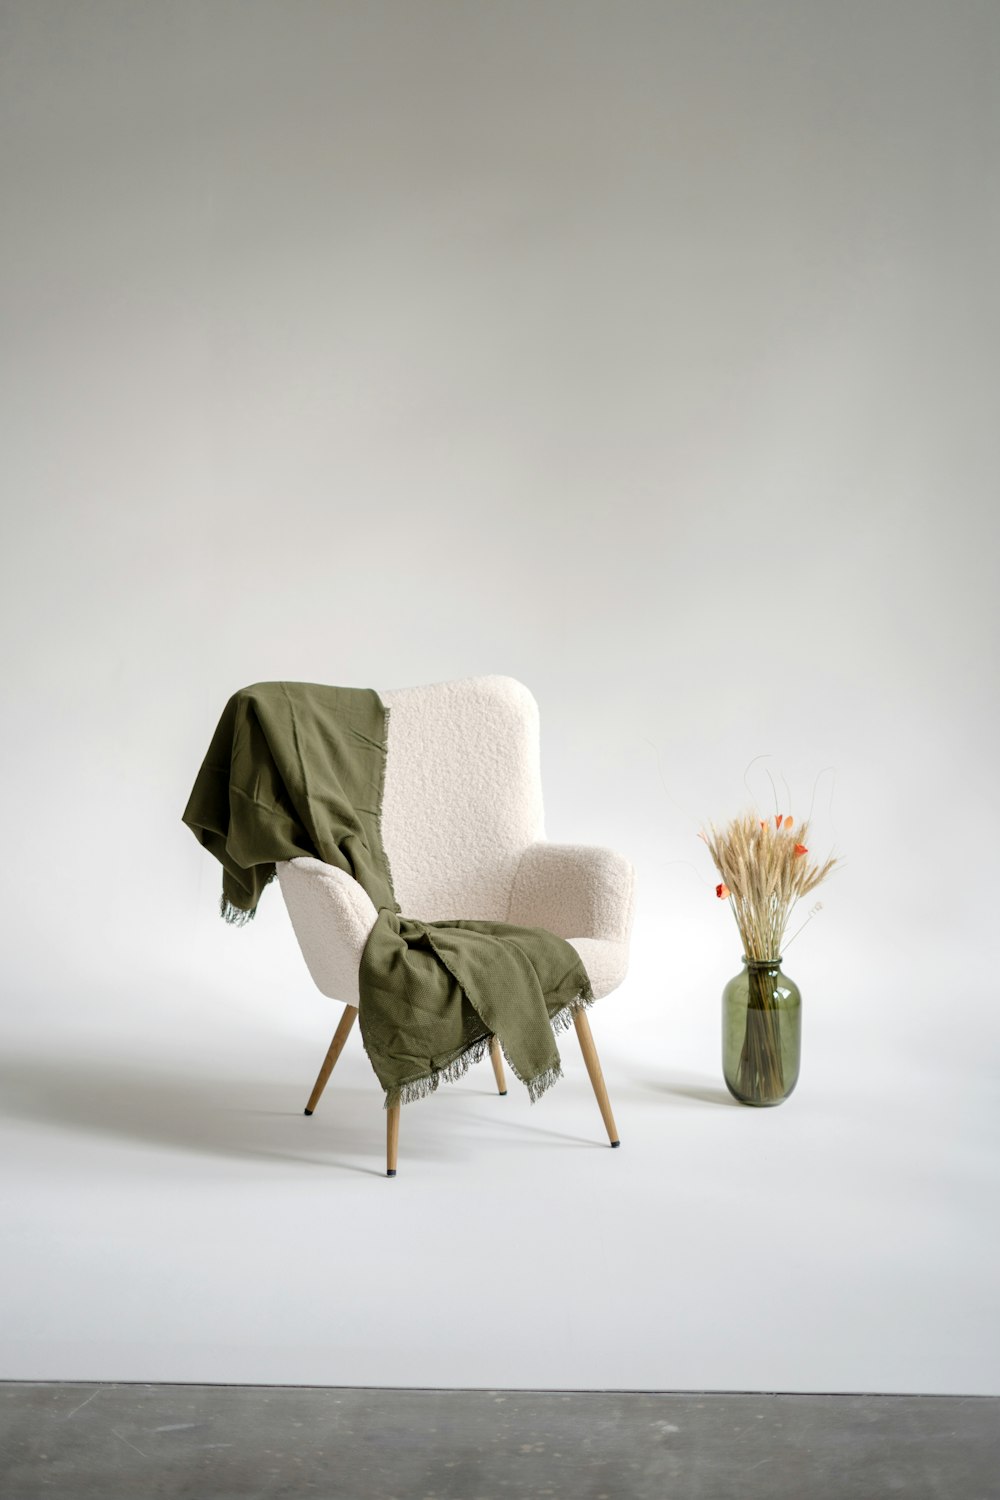 花瓶の隣に毛布を敷いた椅子